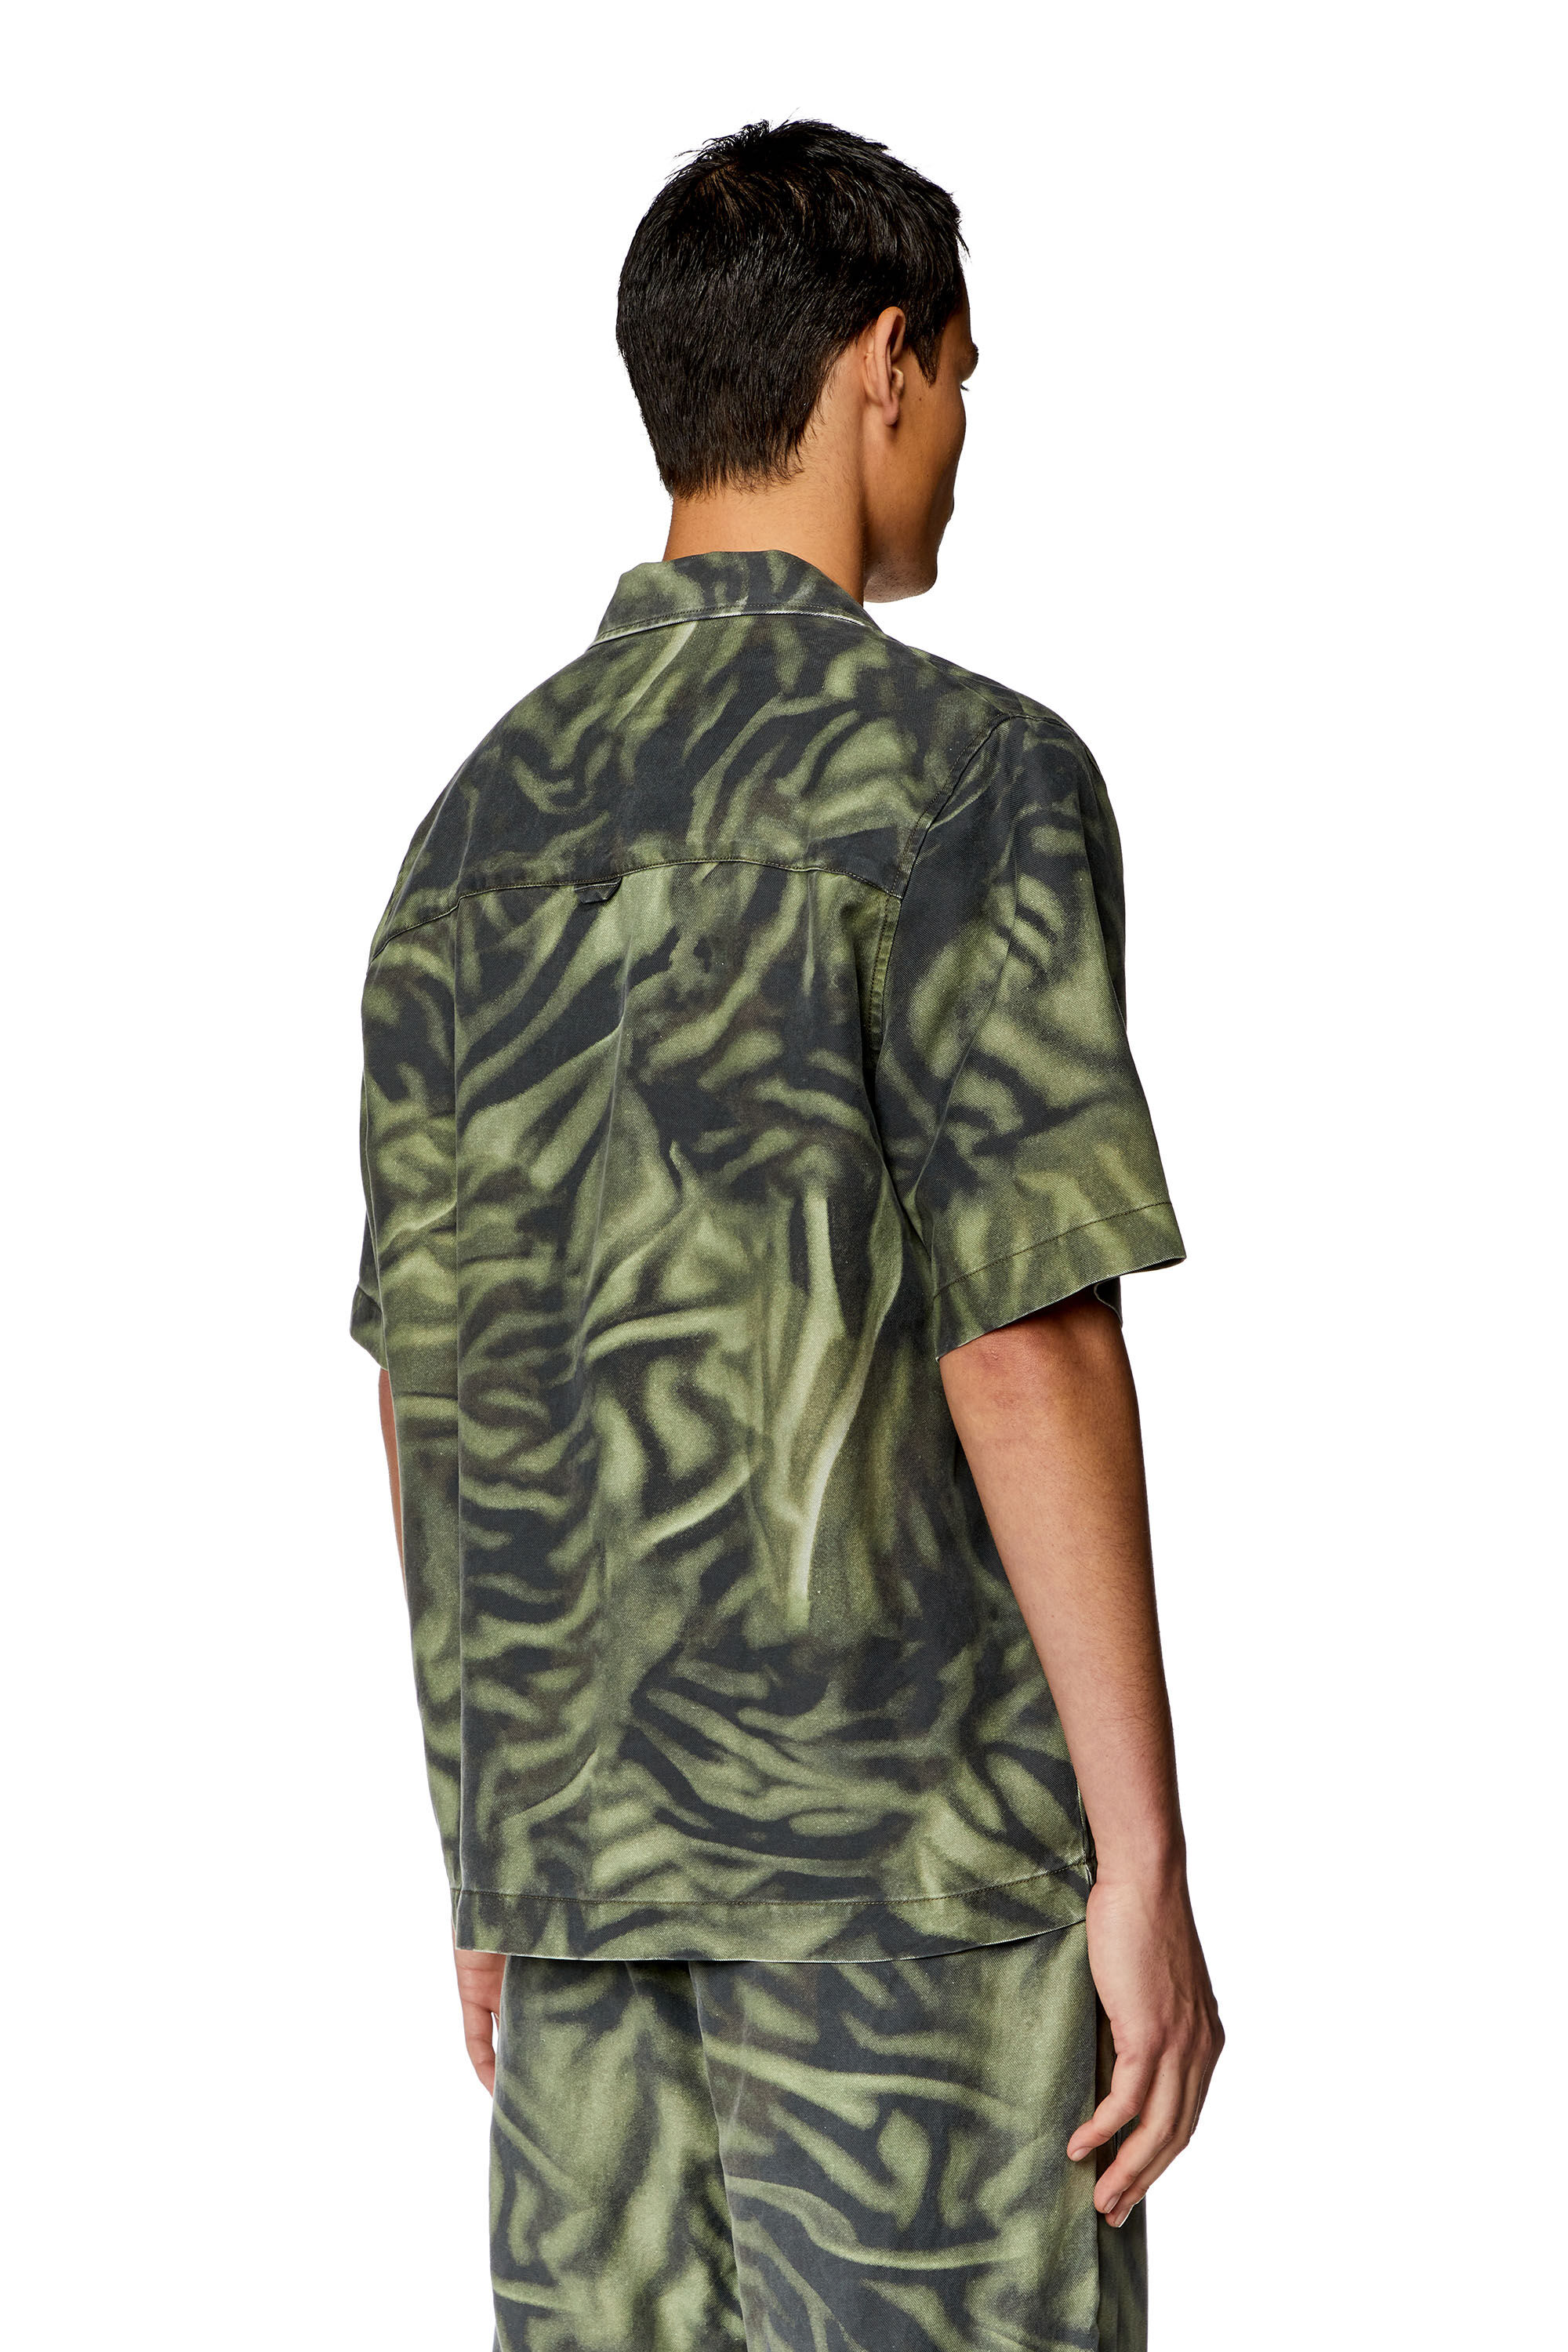 Diesel - S-SAM-ZEBRA, Hombre Camisa de manga corta con estampado de camuflaje de cebra in Multicolor - Image 4